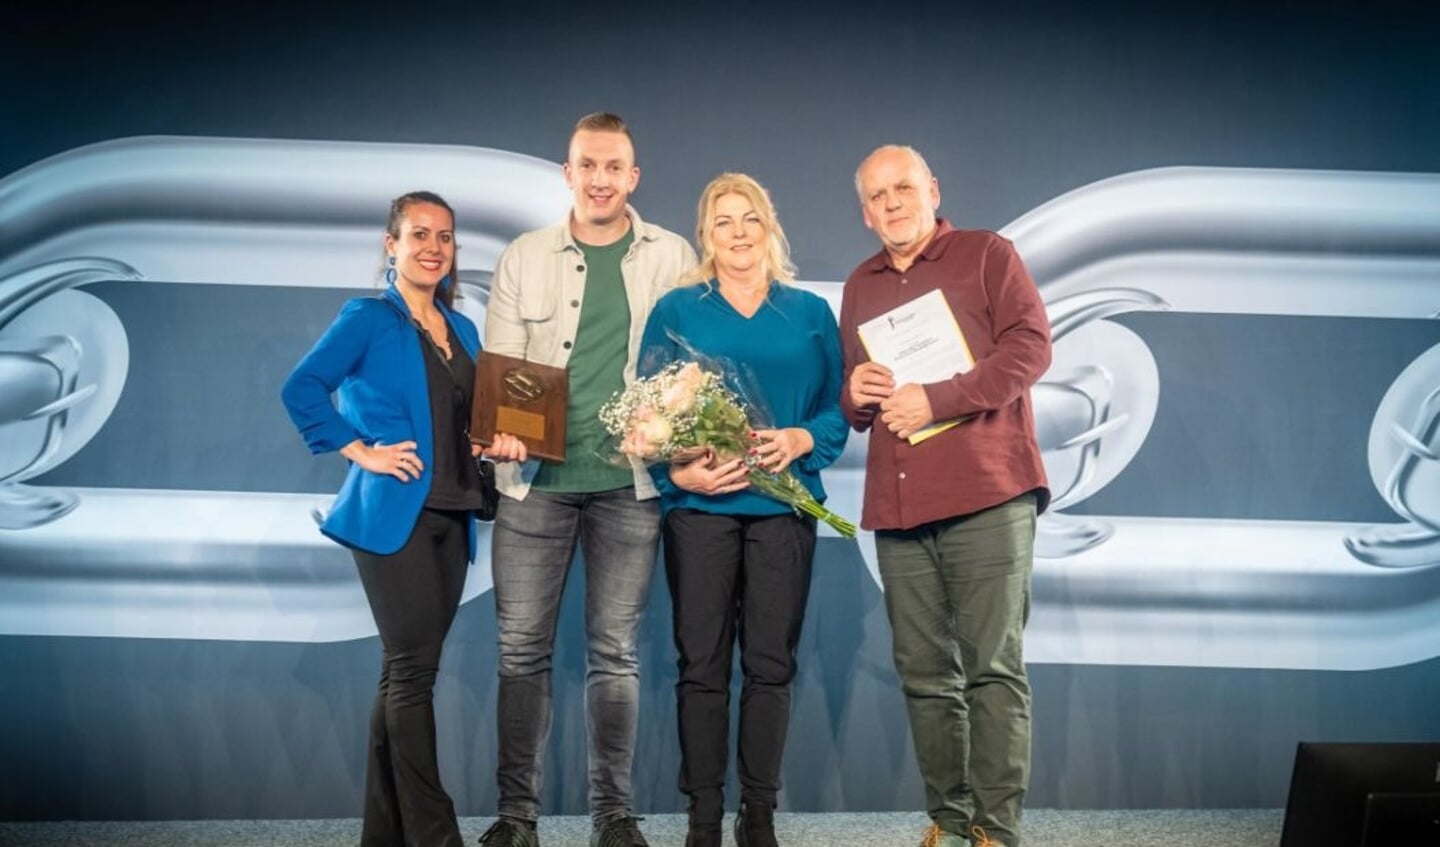 Prachtige eerste prijs in de categorie Automotive voor Van der Gugten Porsche met van links naar rechts: Stephanie, Joeri, Mieke en Johan. Beeld: Van der Gugten Porsche